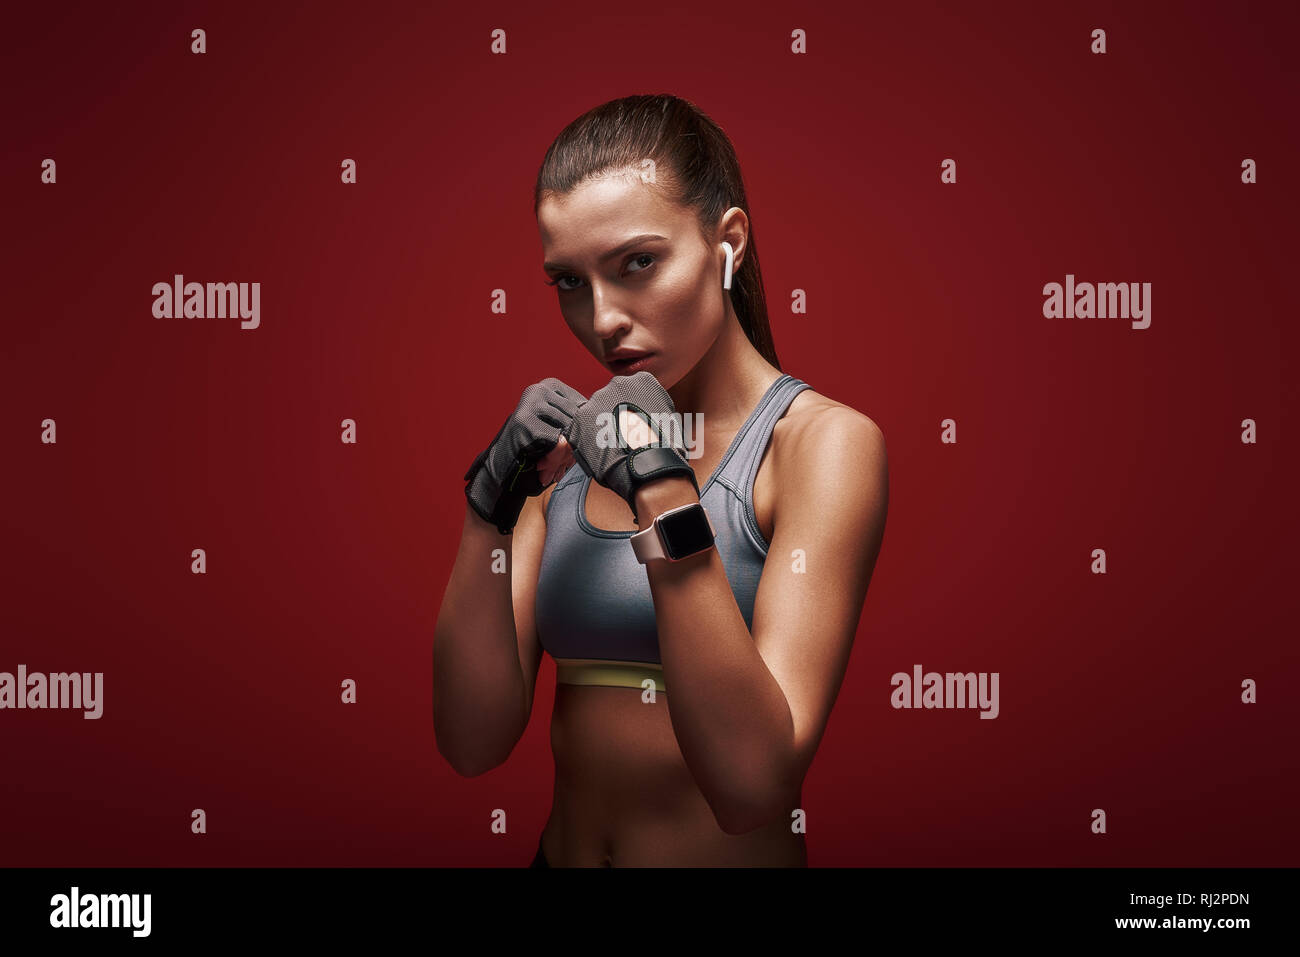 Porträt der jungen schönen Sportlerin workout Handschuhe tragen. Sie ist bereit, zu kämpfen. Über den roten Hintergrund isoliert Stockfoto